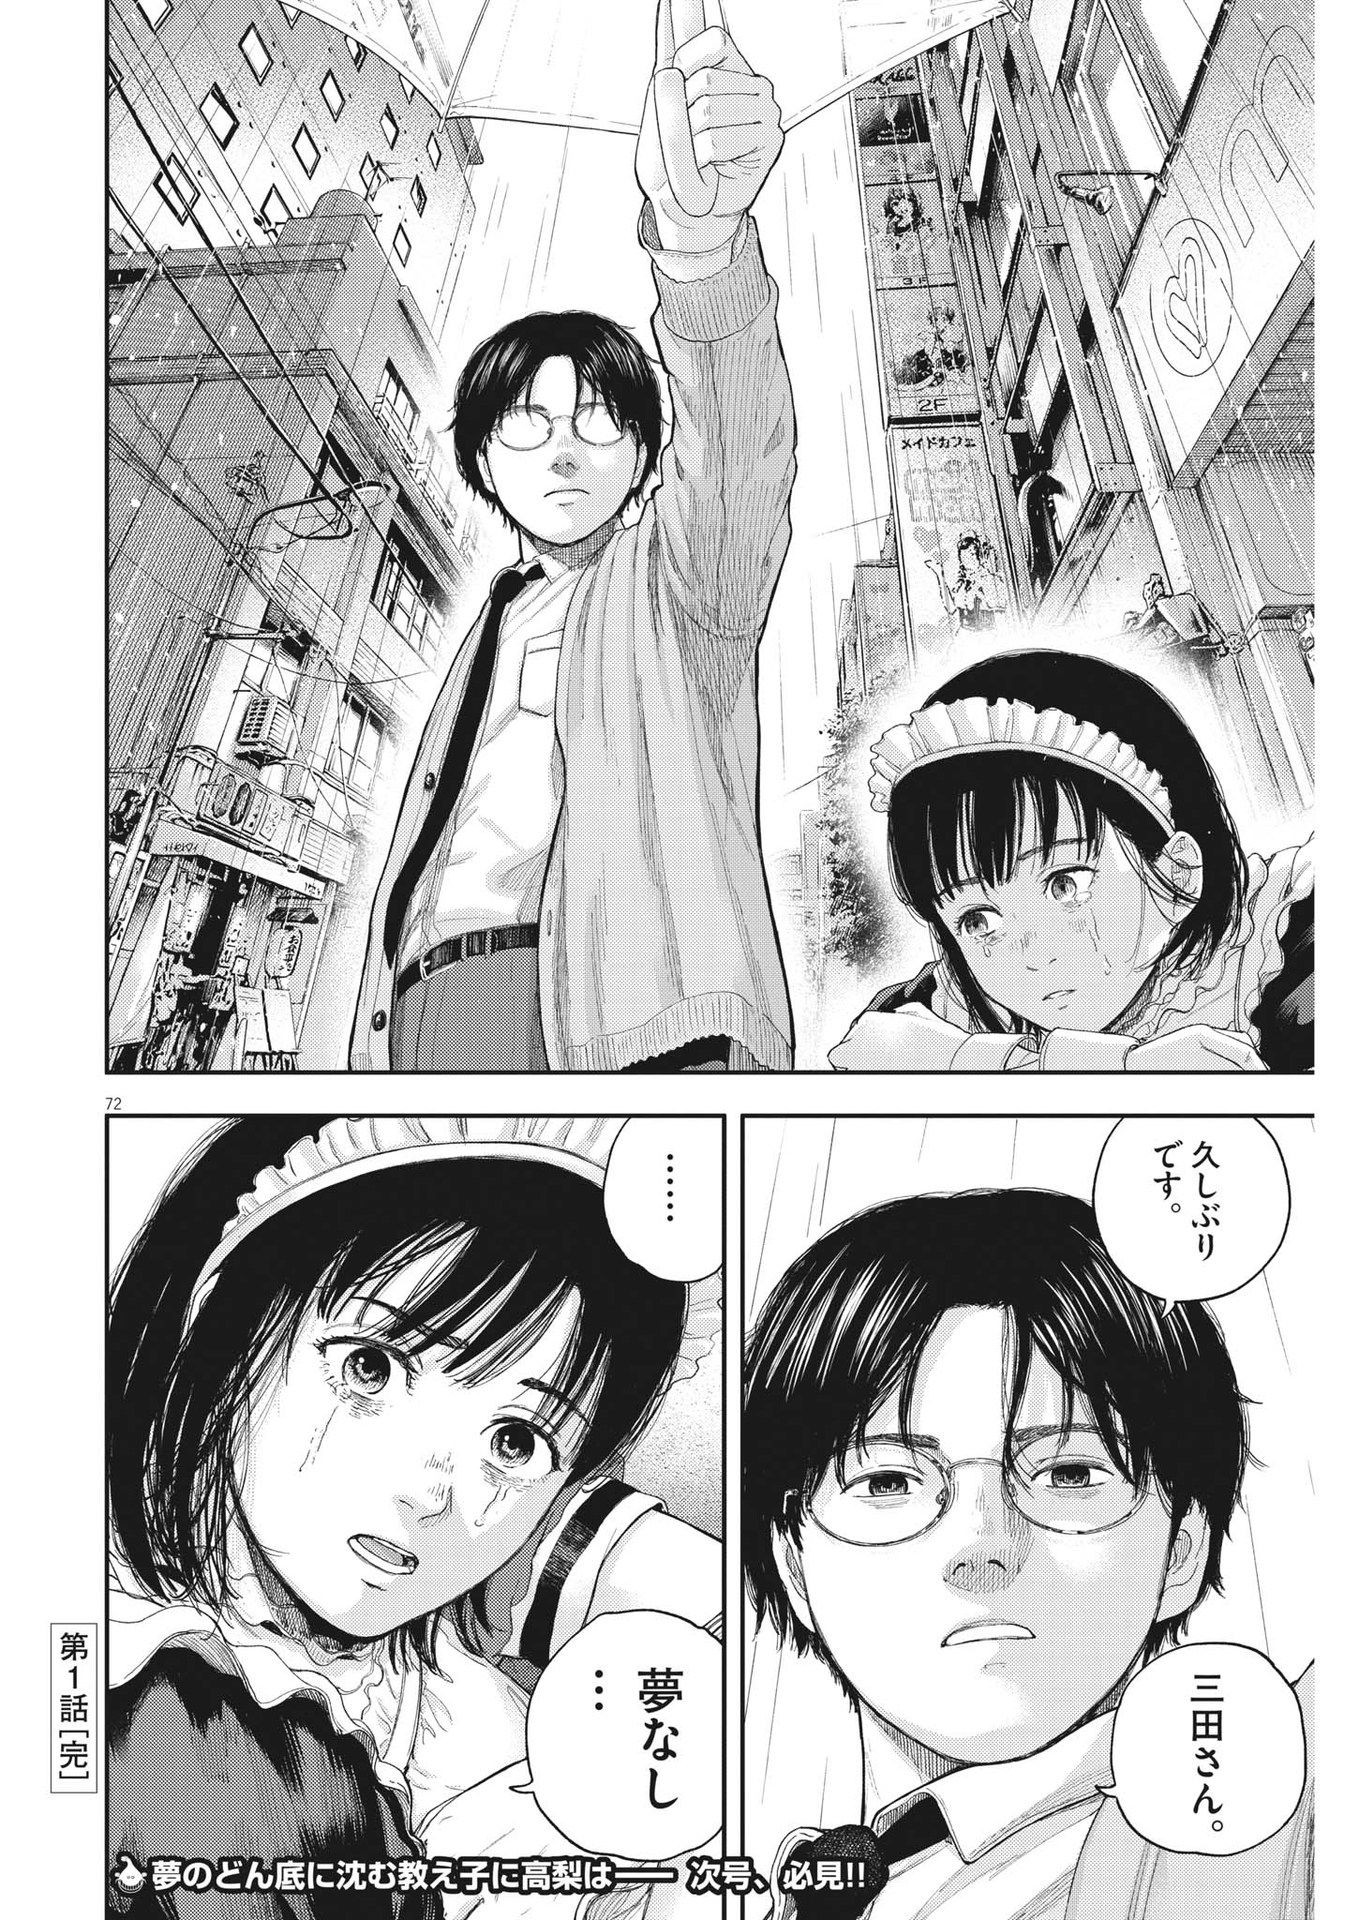 Yumenashi-sensei no Shinroshidou - Chapter 1 - Page 72